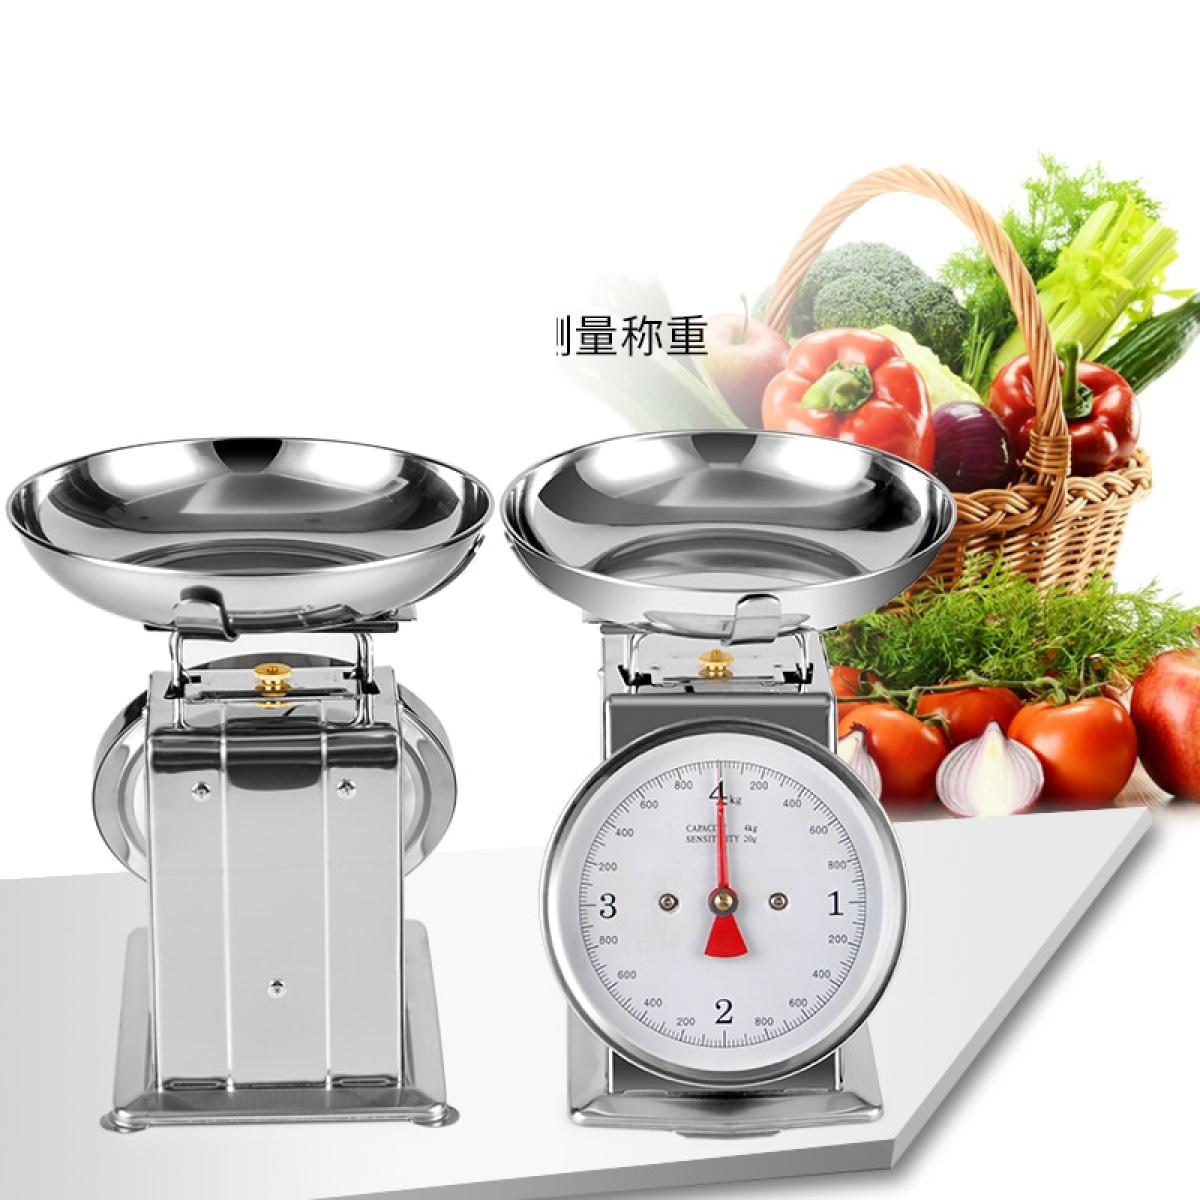 Mécanique de cuisine domestique en acier inoxydable 304 Echelle 4kg | Balance de cuisine(Argent)